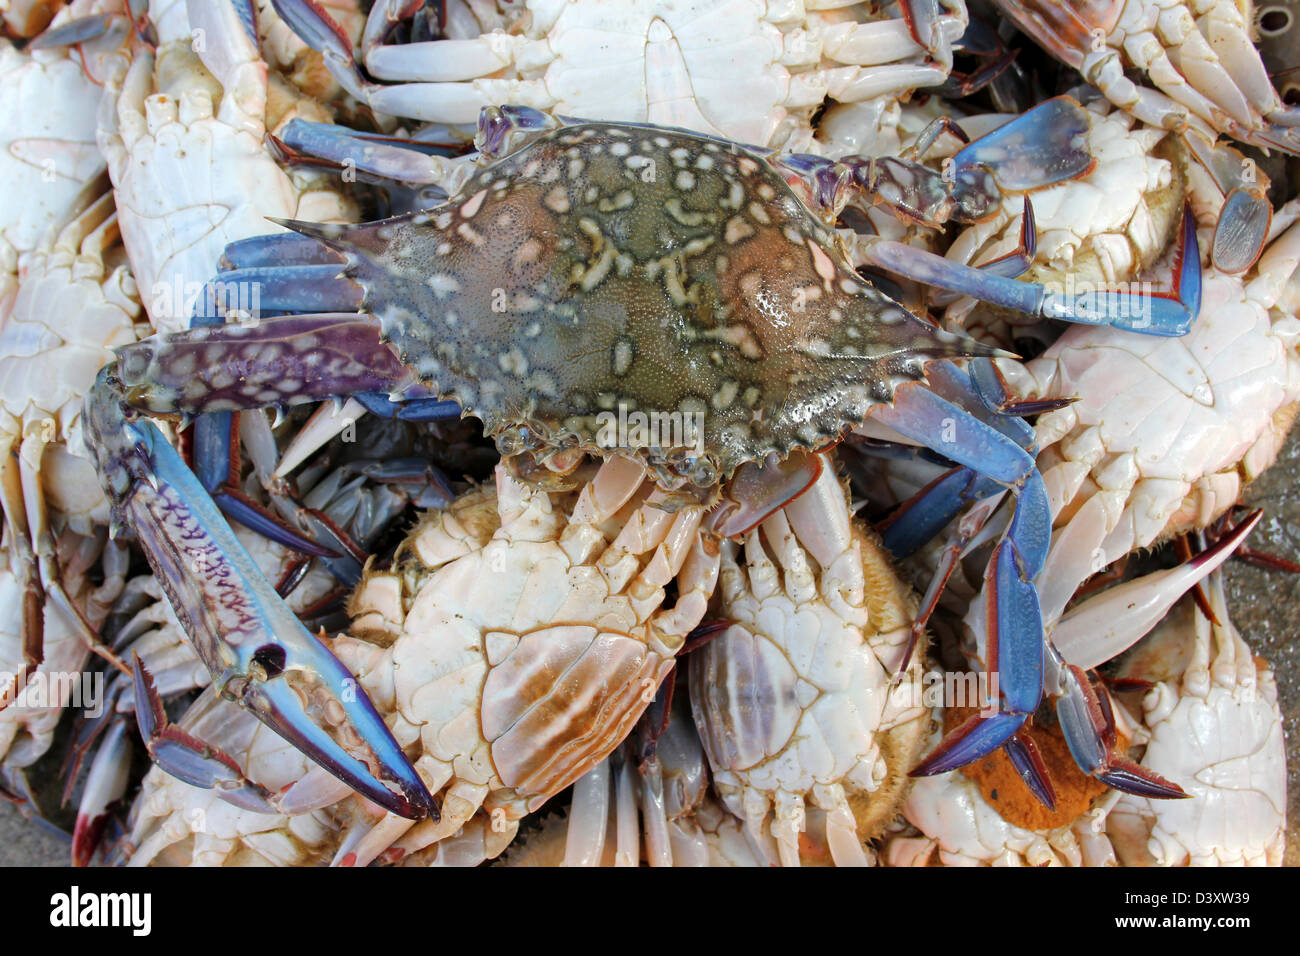 Crab portunus pelagicus hi-res stock photography and images - Alamy